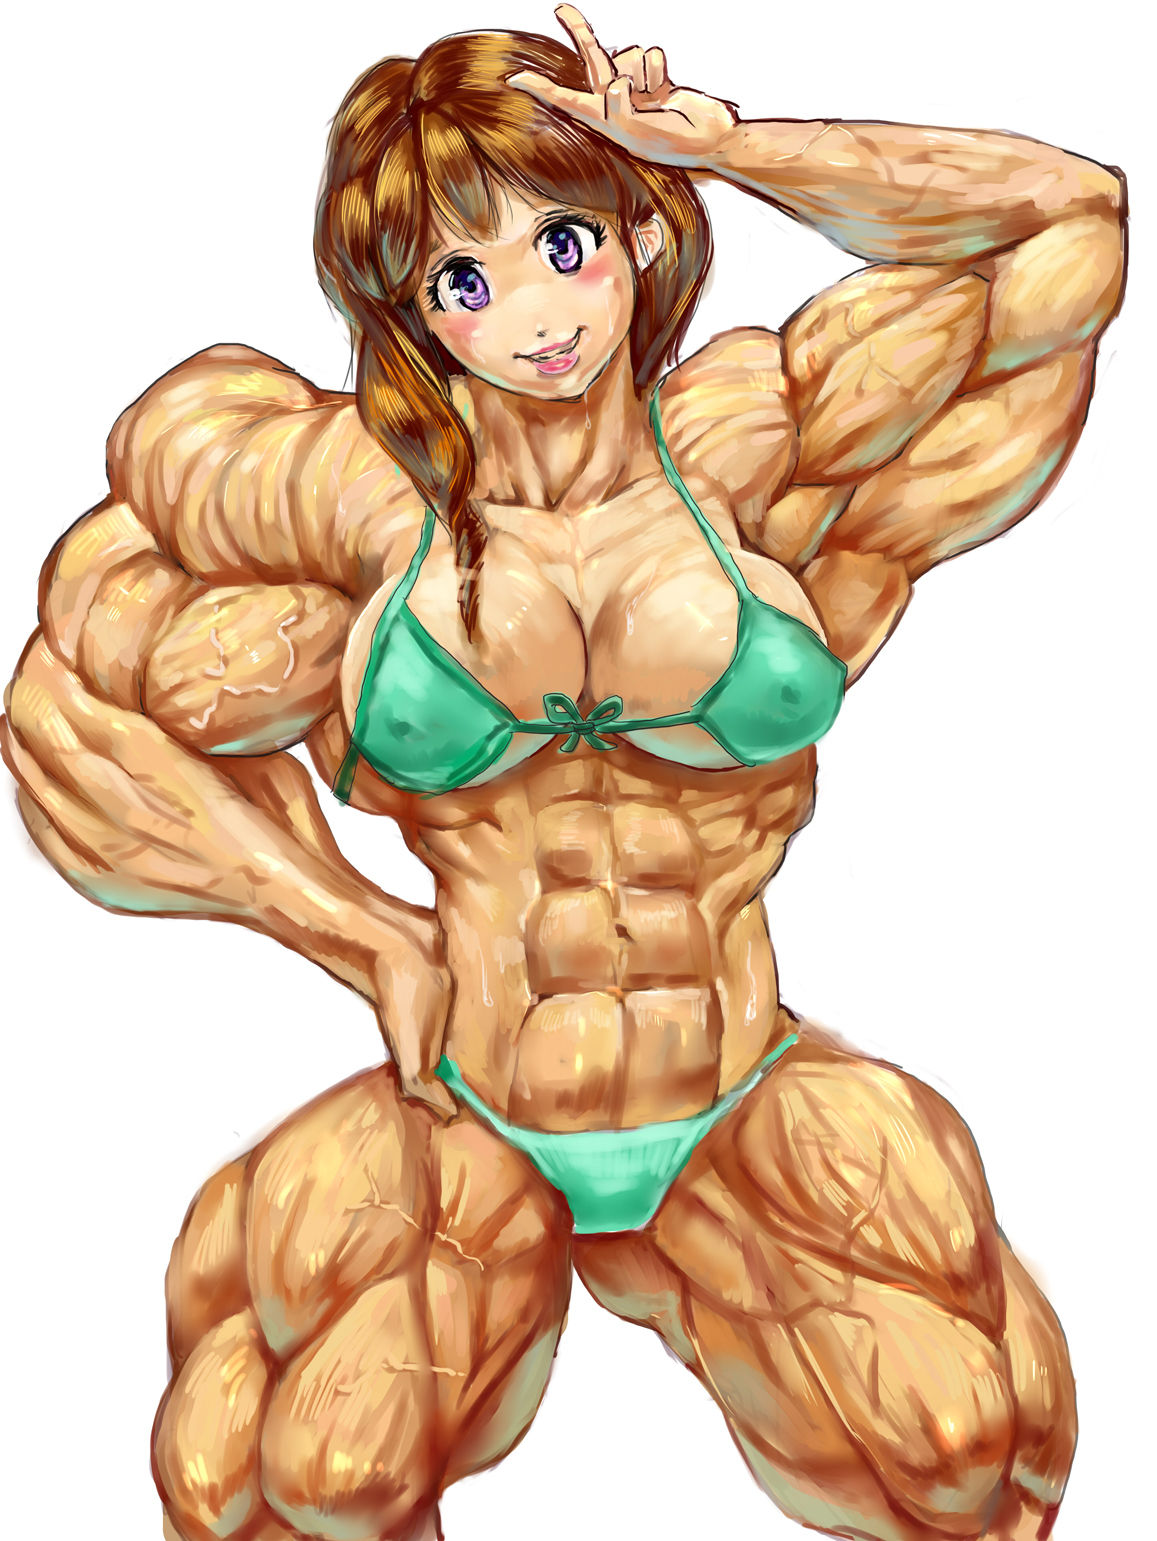 Giantess girl muscle